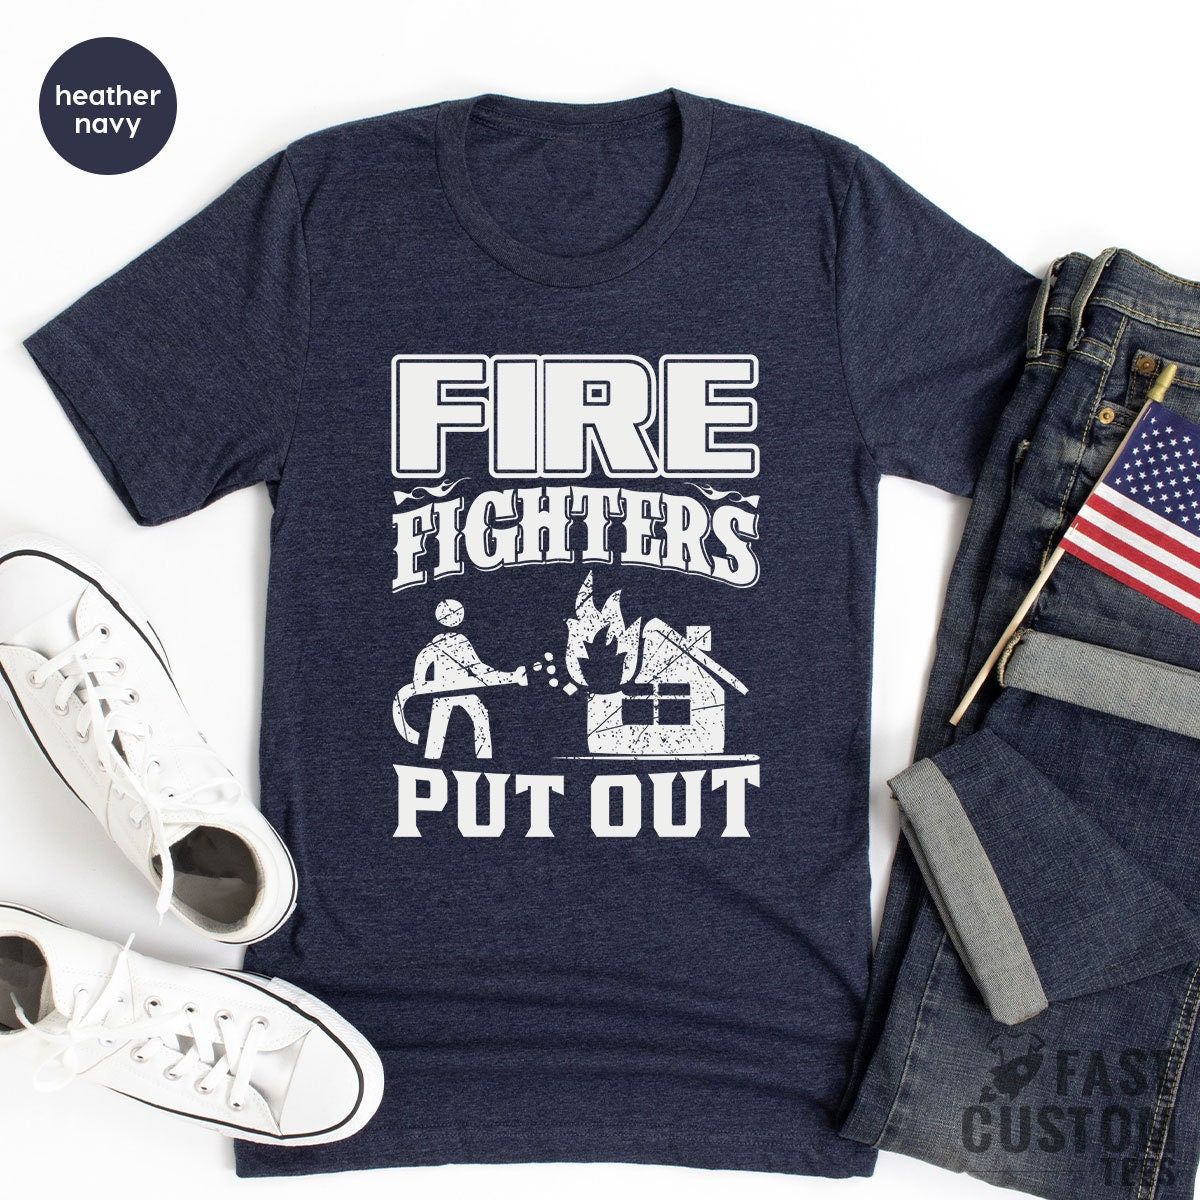 Firefighter Shirt, Fireman T Shirt, Fireman TShirt, Fire Department Shirts, Gift For Fireman, Fire Dept Tee, Fire Fighter Gifts - Fastdeliverytees.com